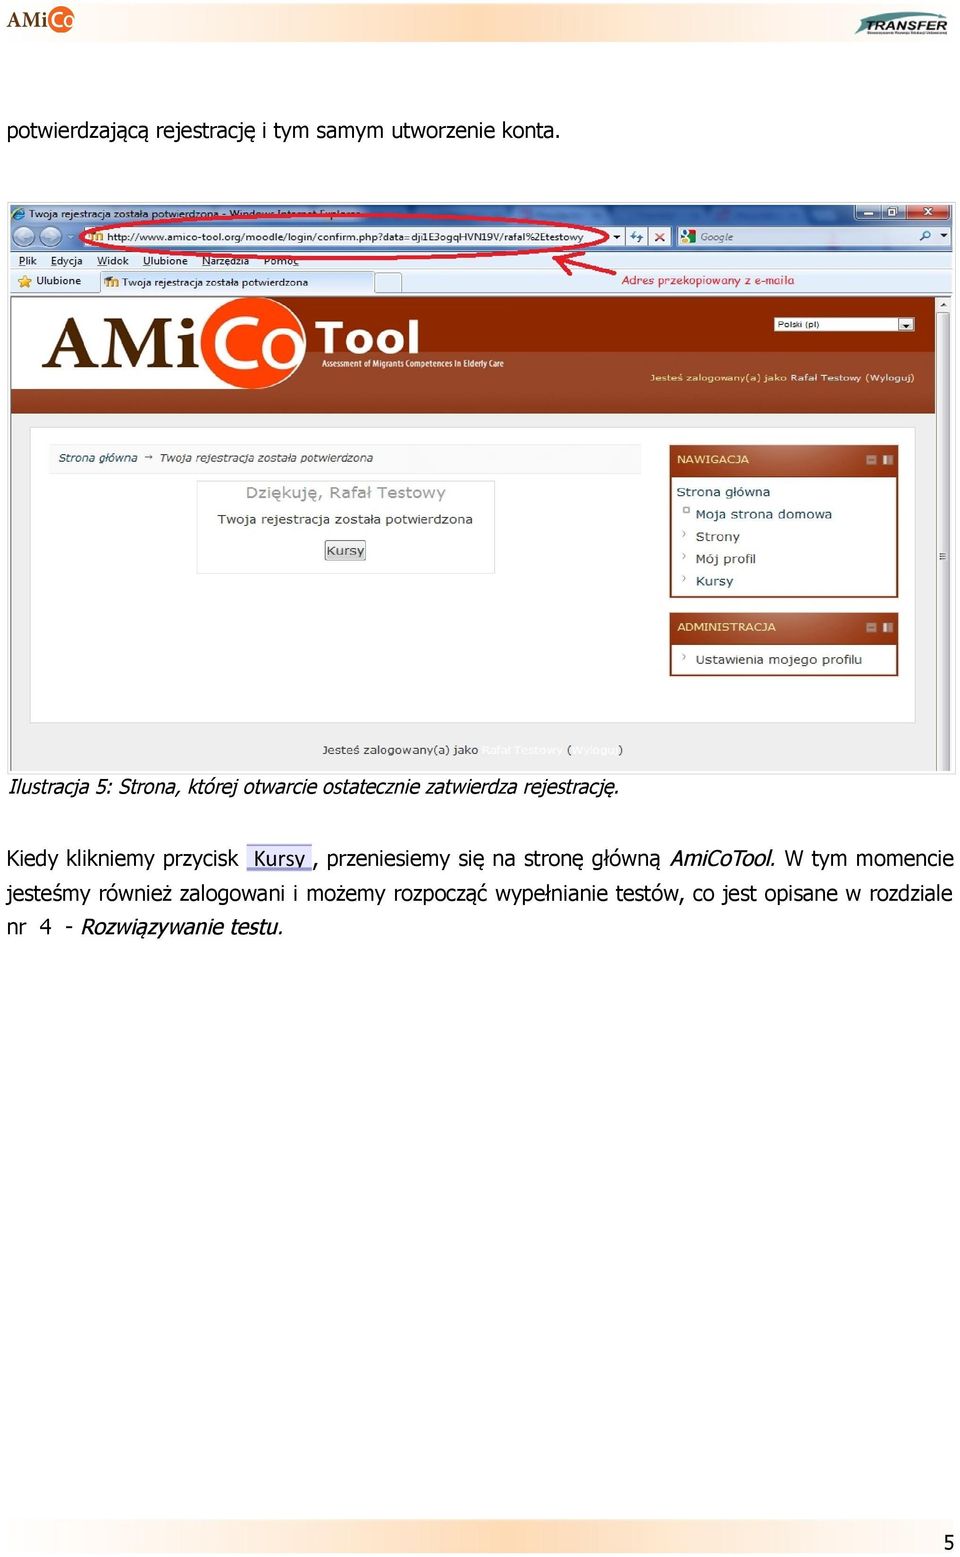 Kiedy klikniemy przycisk Kursy, przeniesiemy się na stronę główną AmiCoTool.